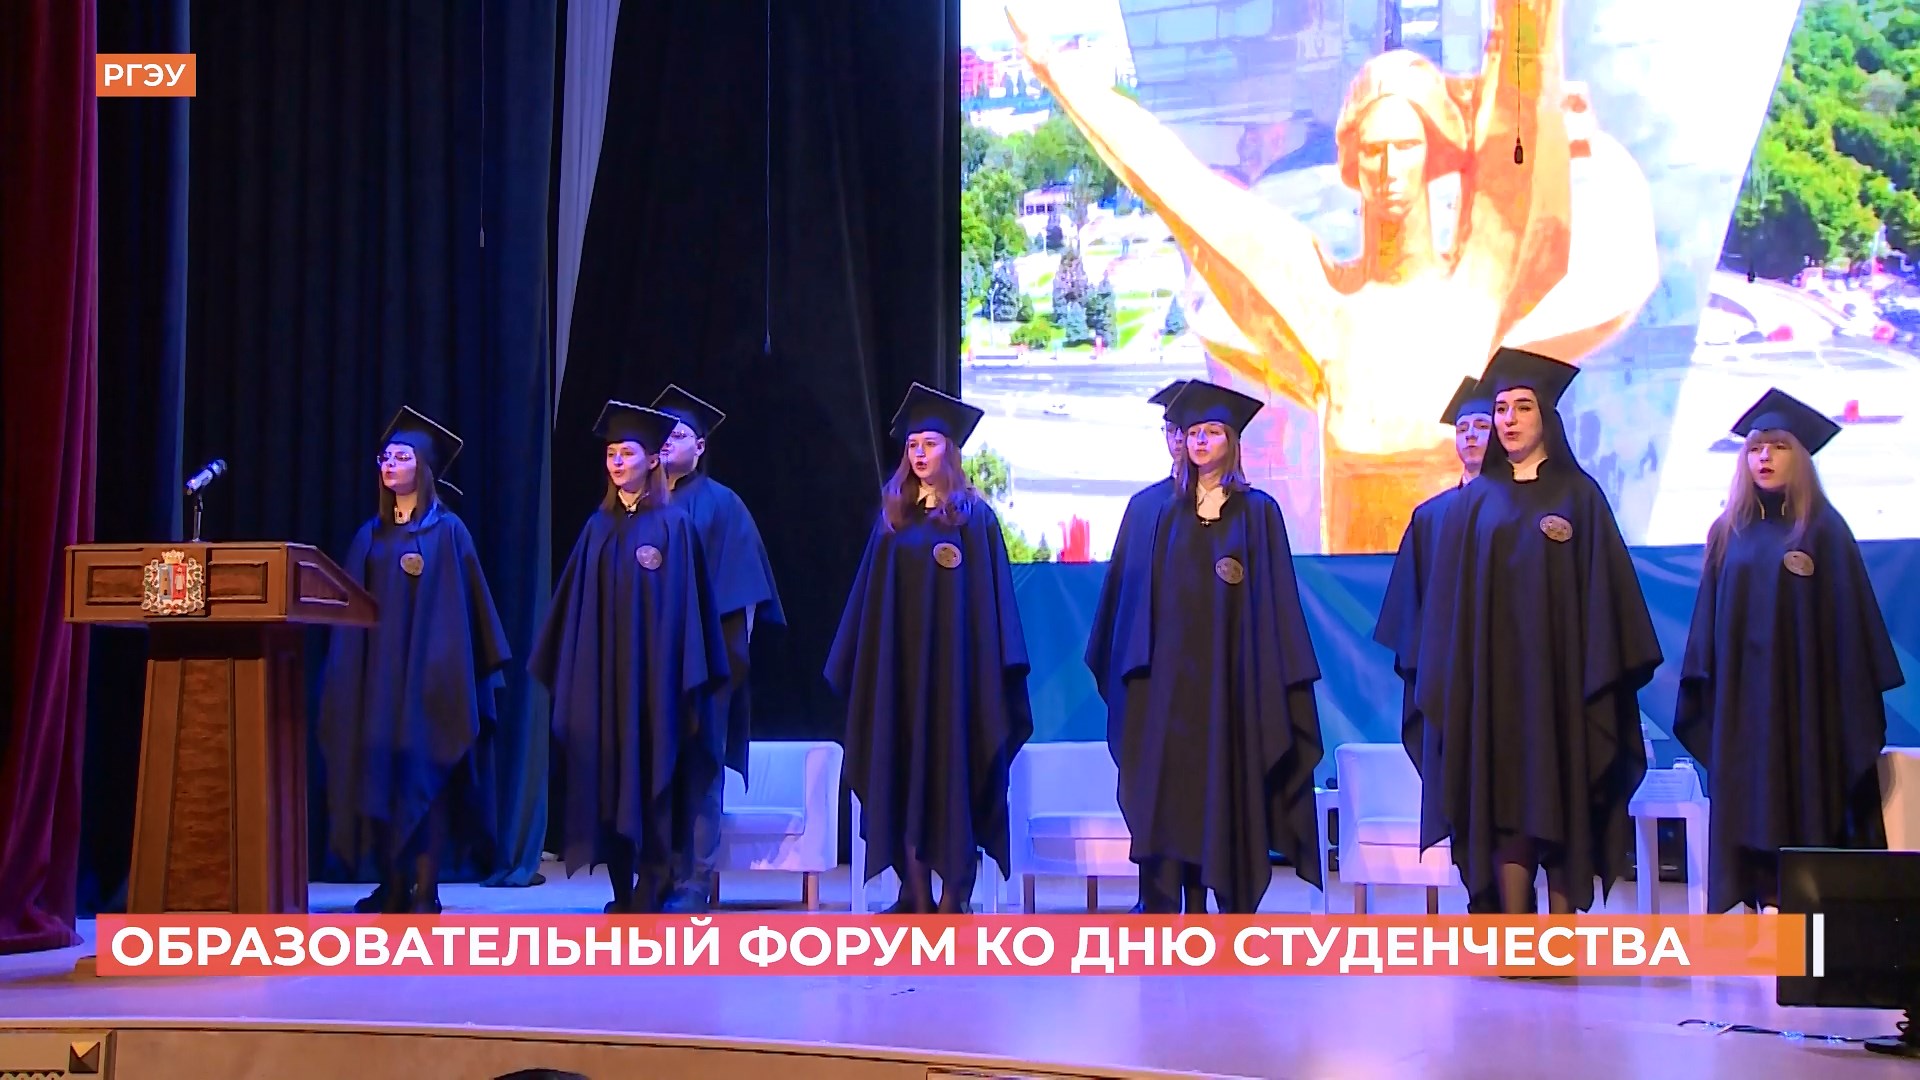 Образовательный форум ко Дню студенчества прошел в Ростове